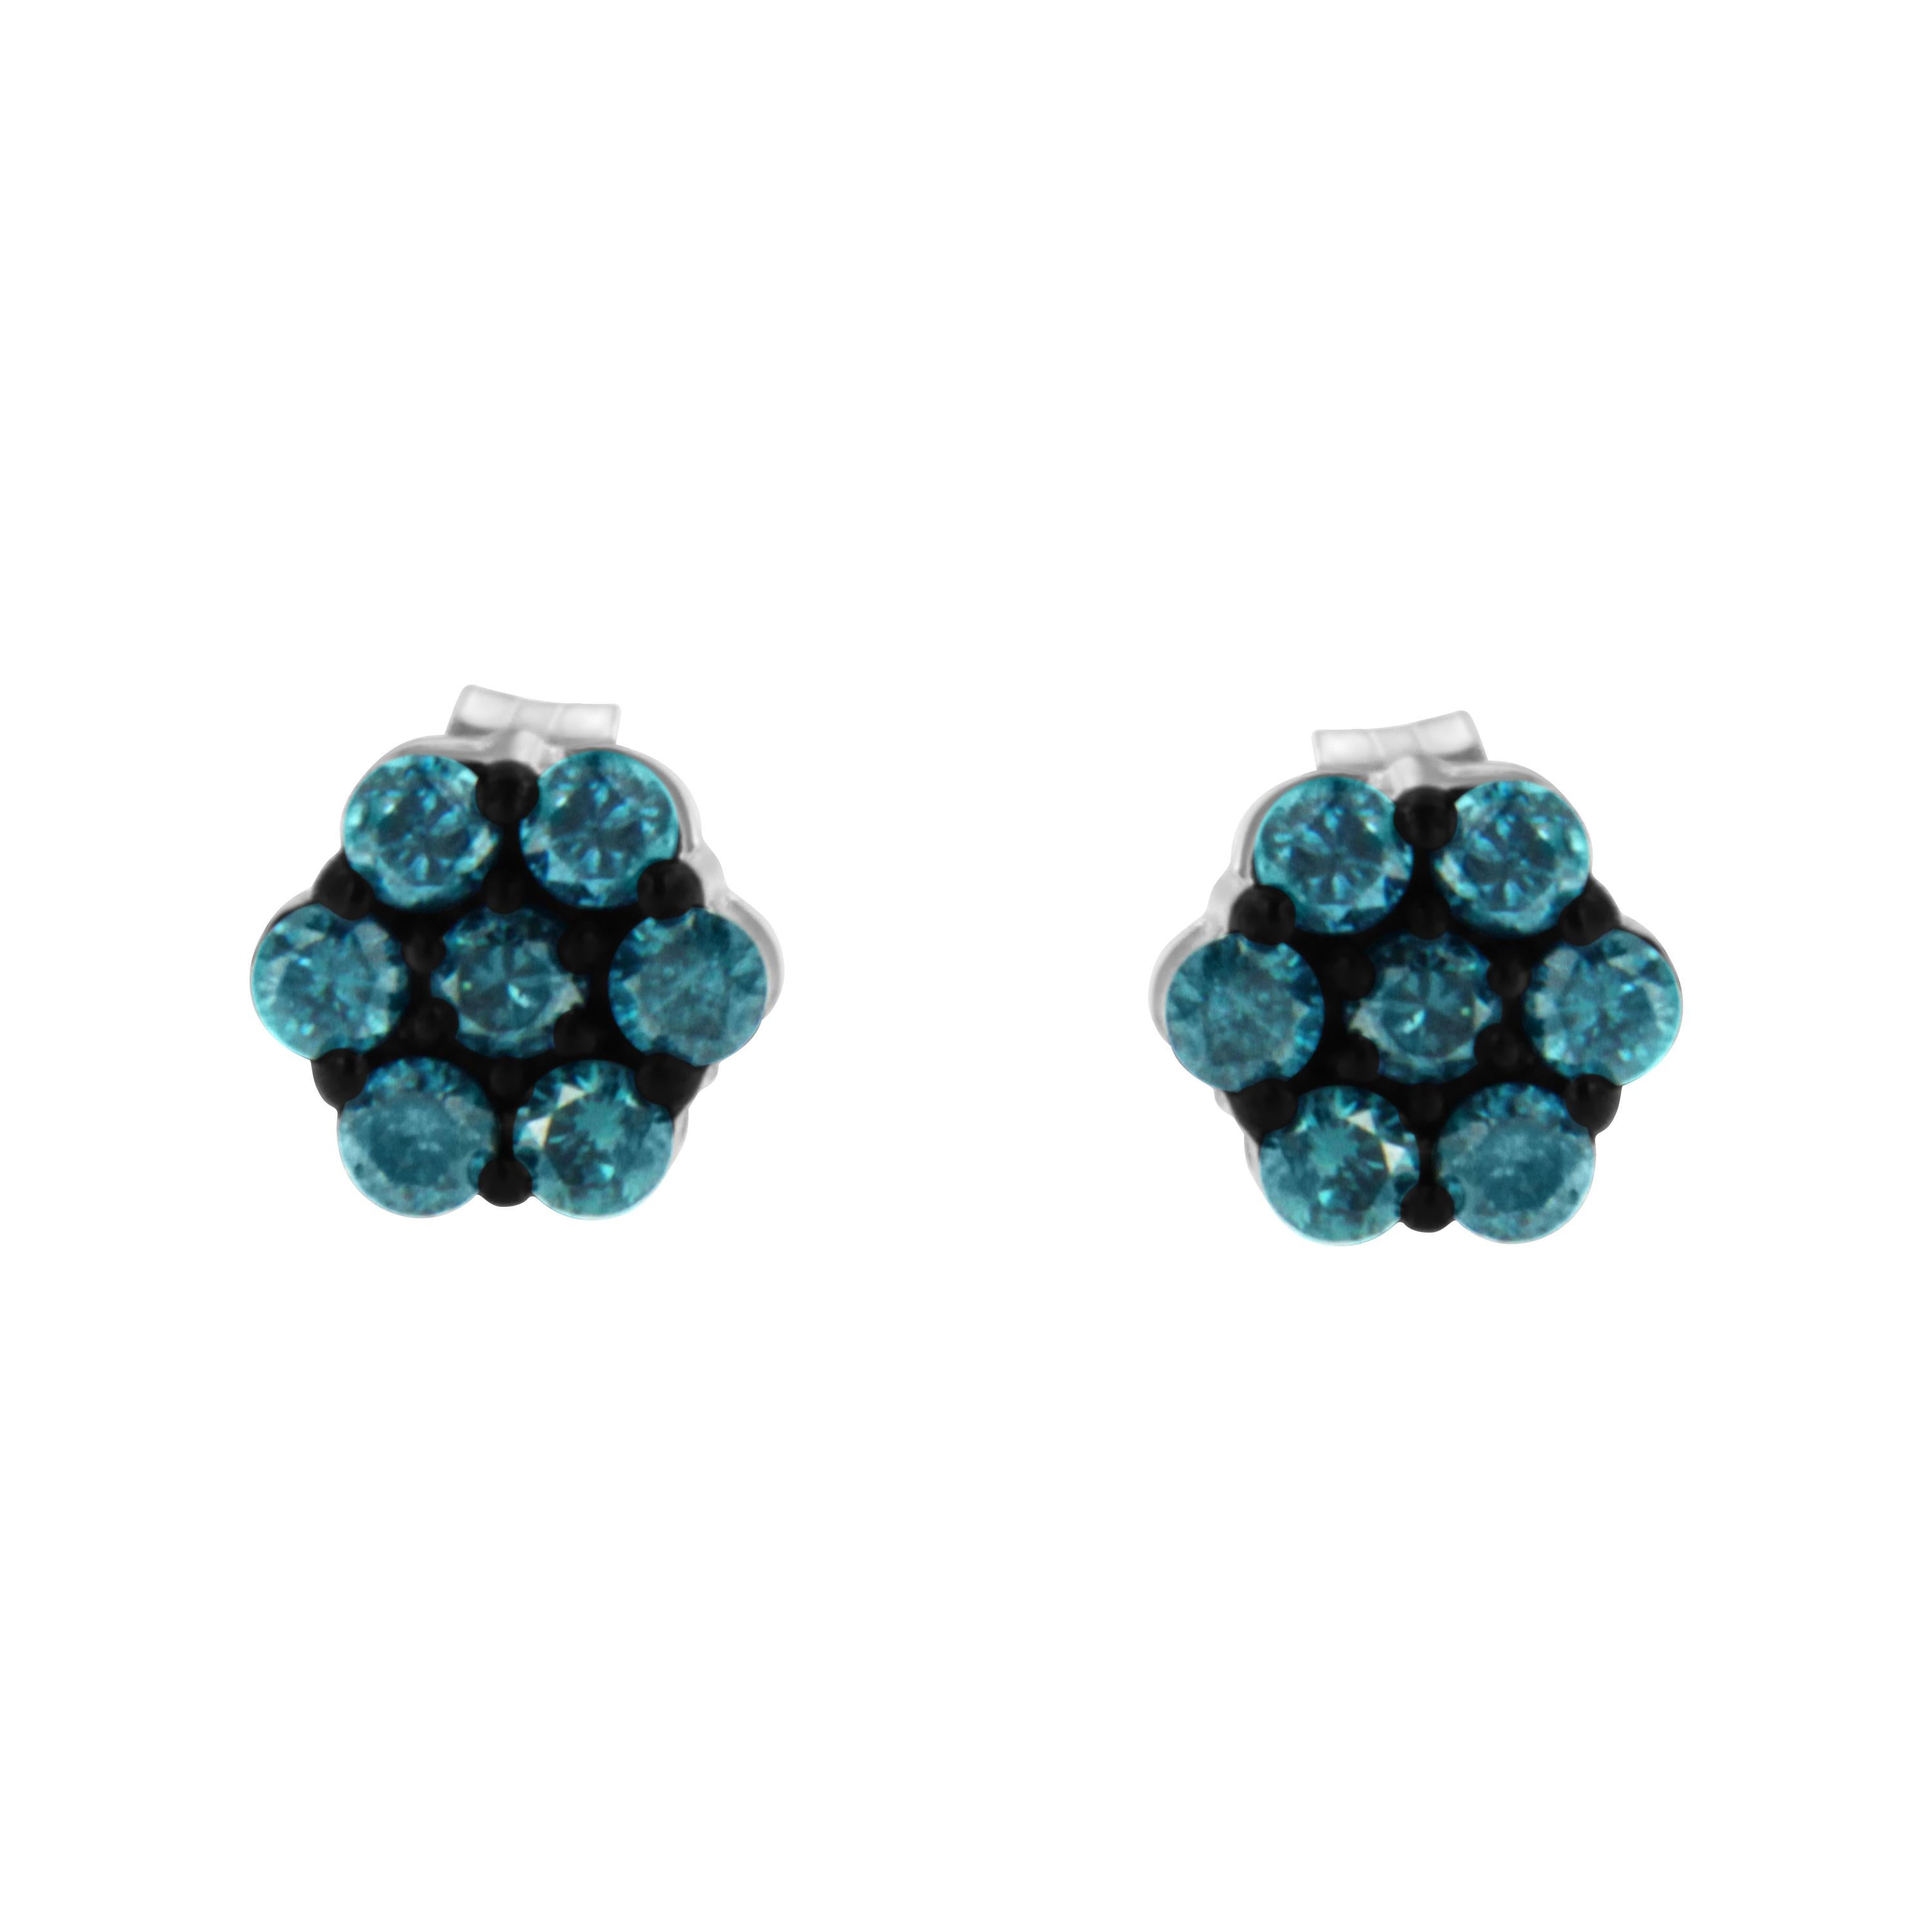 1/2 carat blue diamond earrings